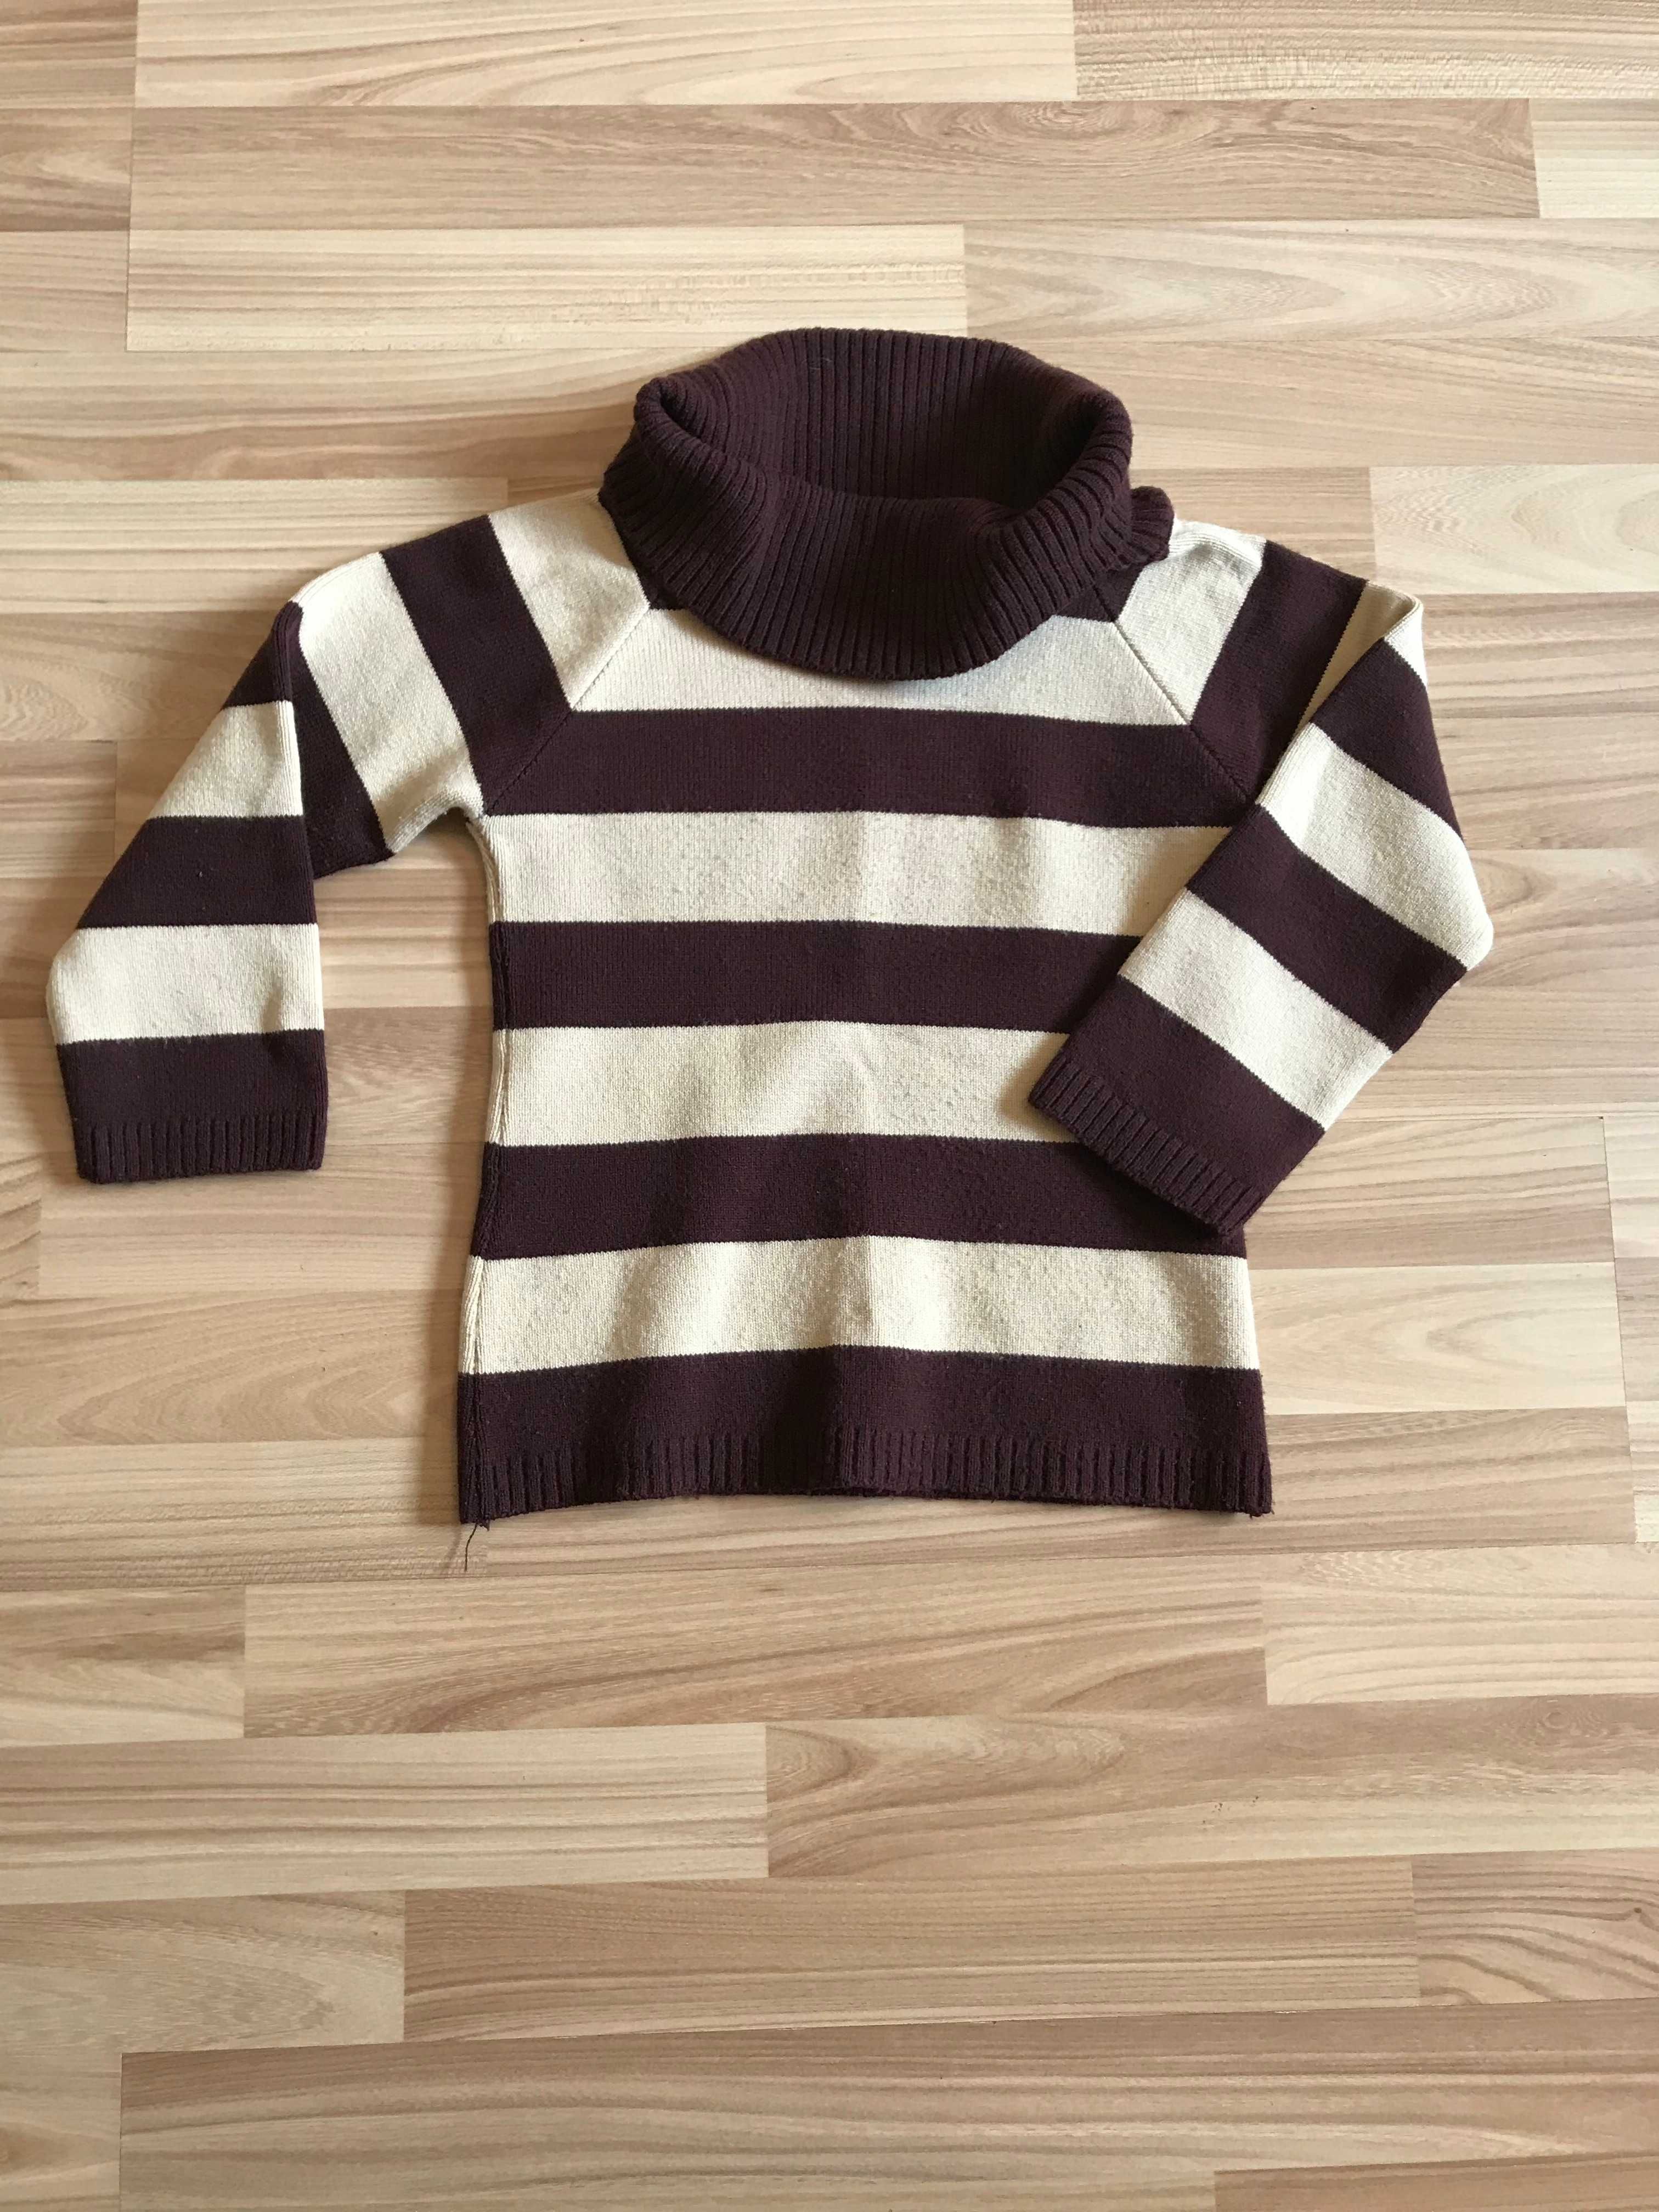 Sweter w paski pasy rękaw 2/4 czekoladowo-kremowy r. 36 vintage retro